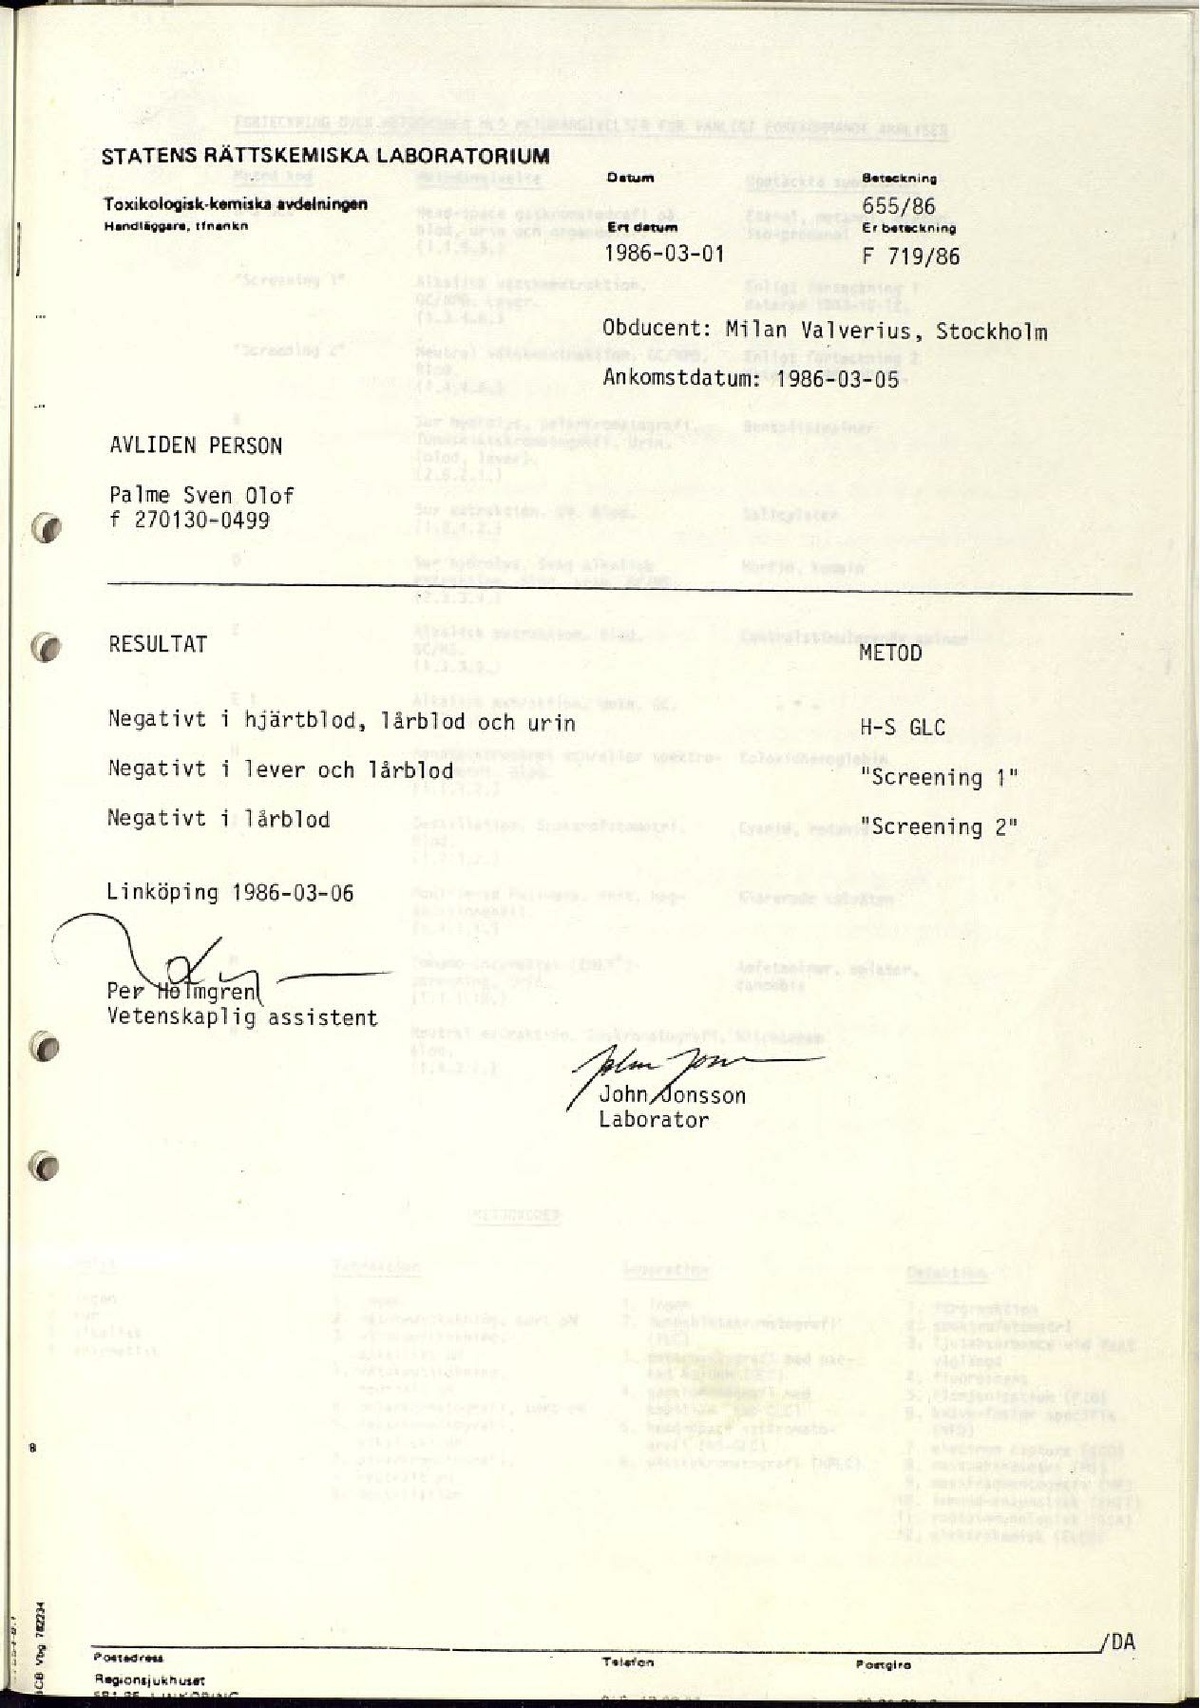 Ann-1986-03-27 B3-02 Obduktionsrapport med kompletterande utlåtande med bilagor.pdf